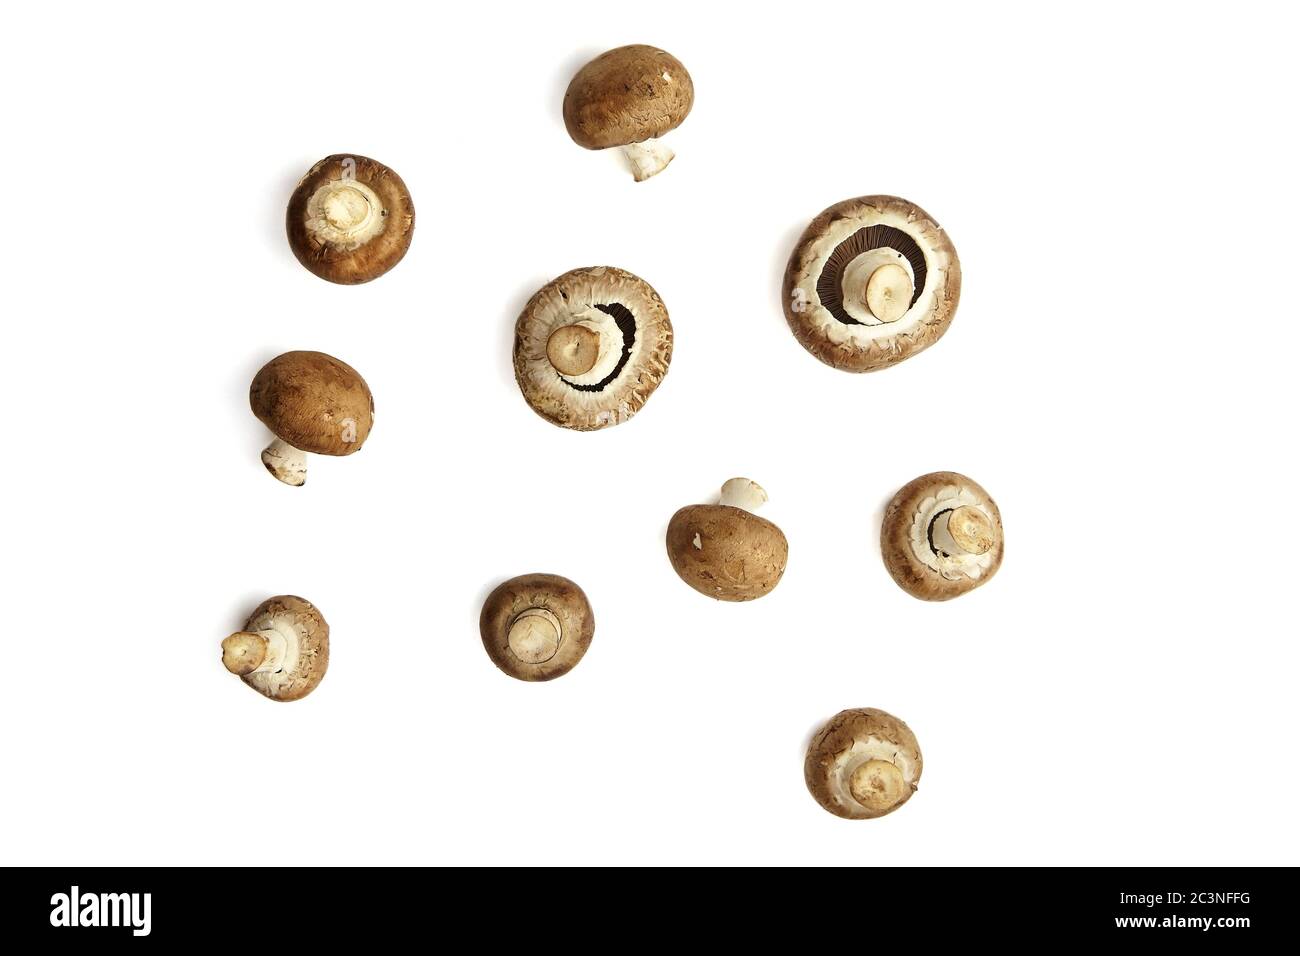 Funghi, champignons marroni freschi isolati su sfondo bianco, vista dall'alto. Molti ingredienti alimentari non cotti, piatto posare Foto Stock